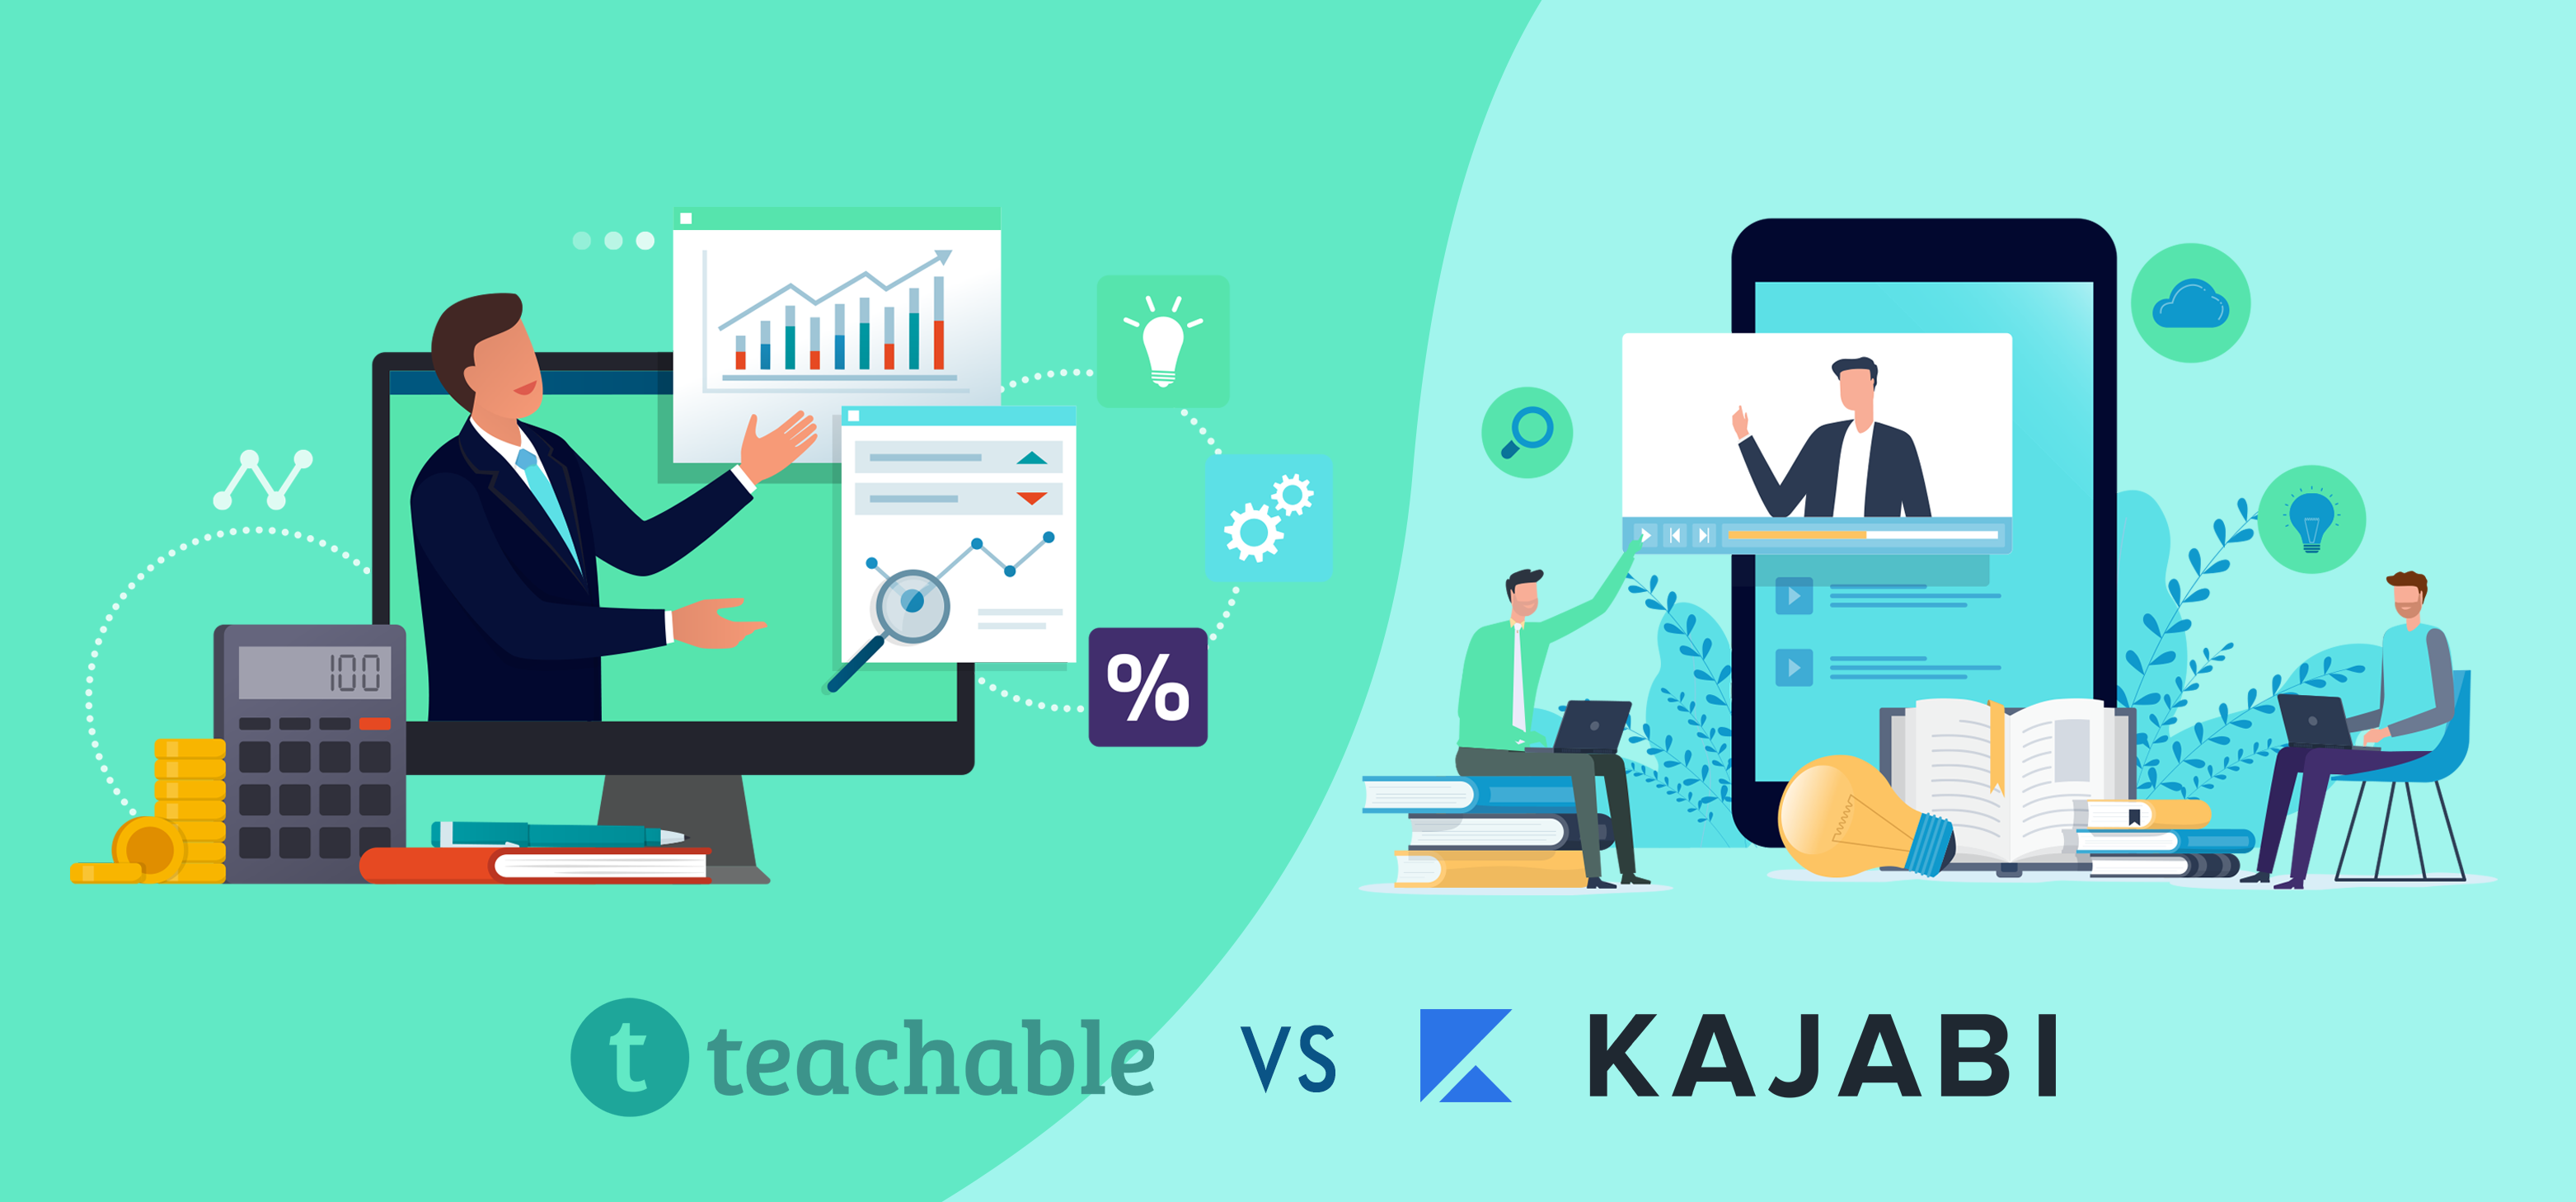 teachable vs kajabi